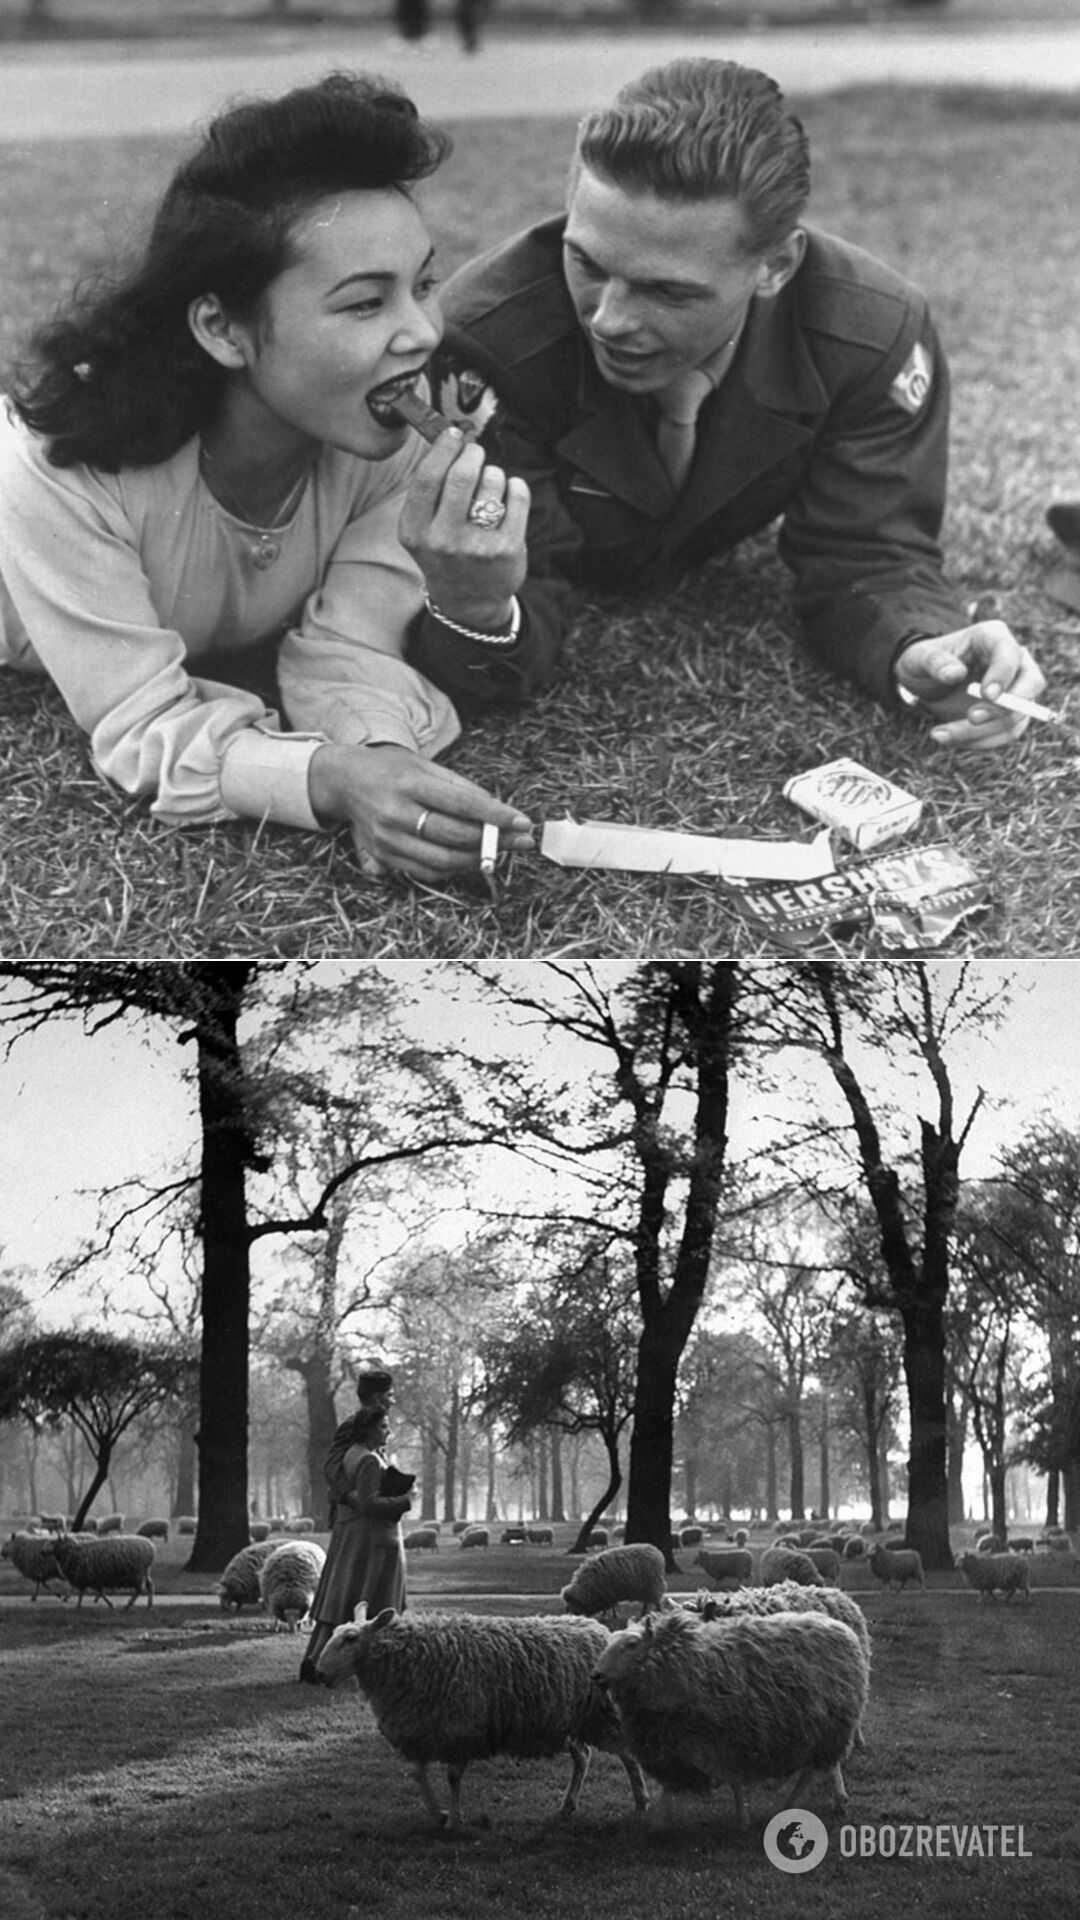 Американський солдат і місцева дівчина, 1940 року народження; солдат і його дівчина прогулюються серед овець у Кенсінґтонському саду, Лондон, 1945 рік